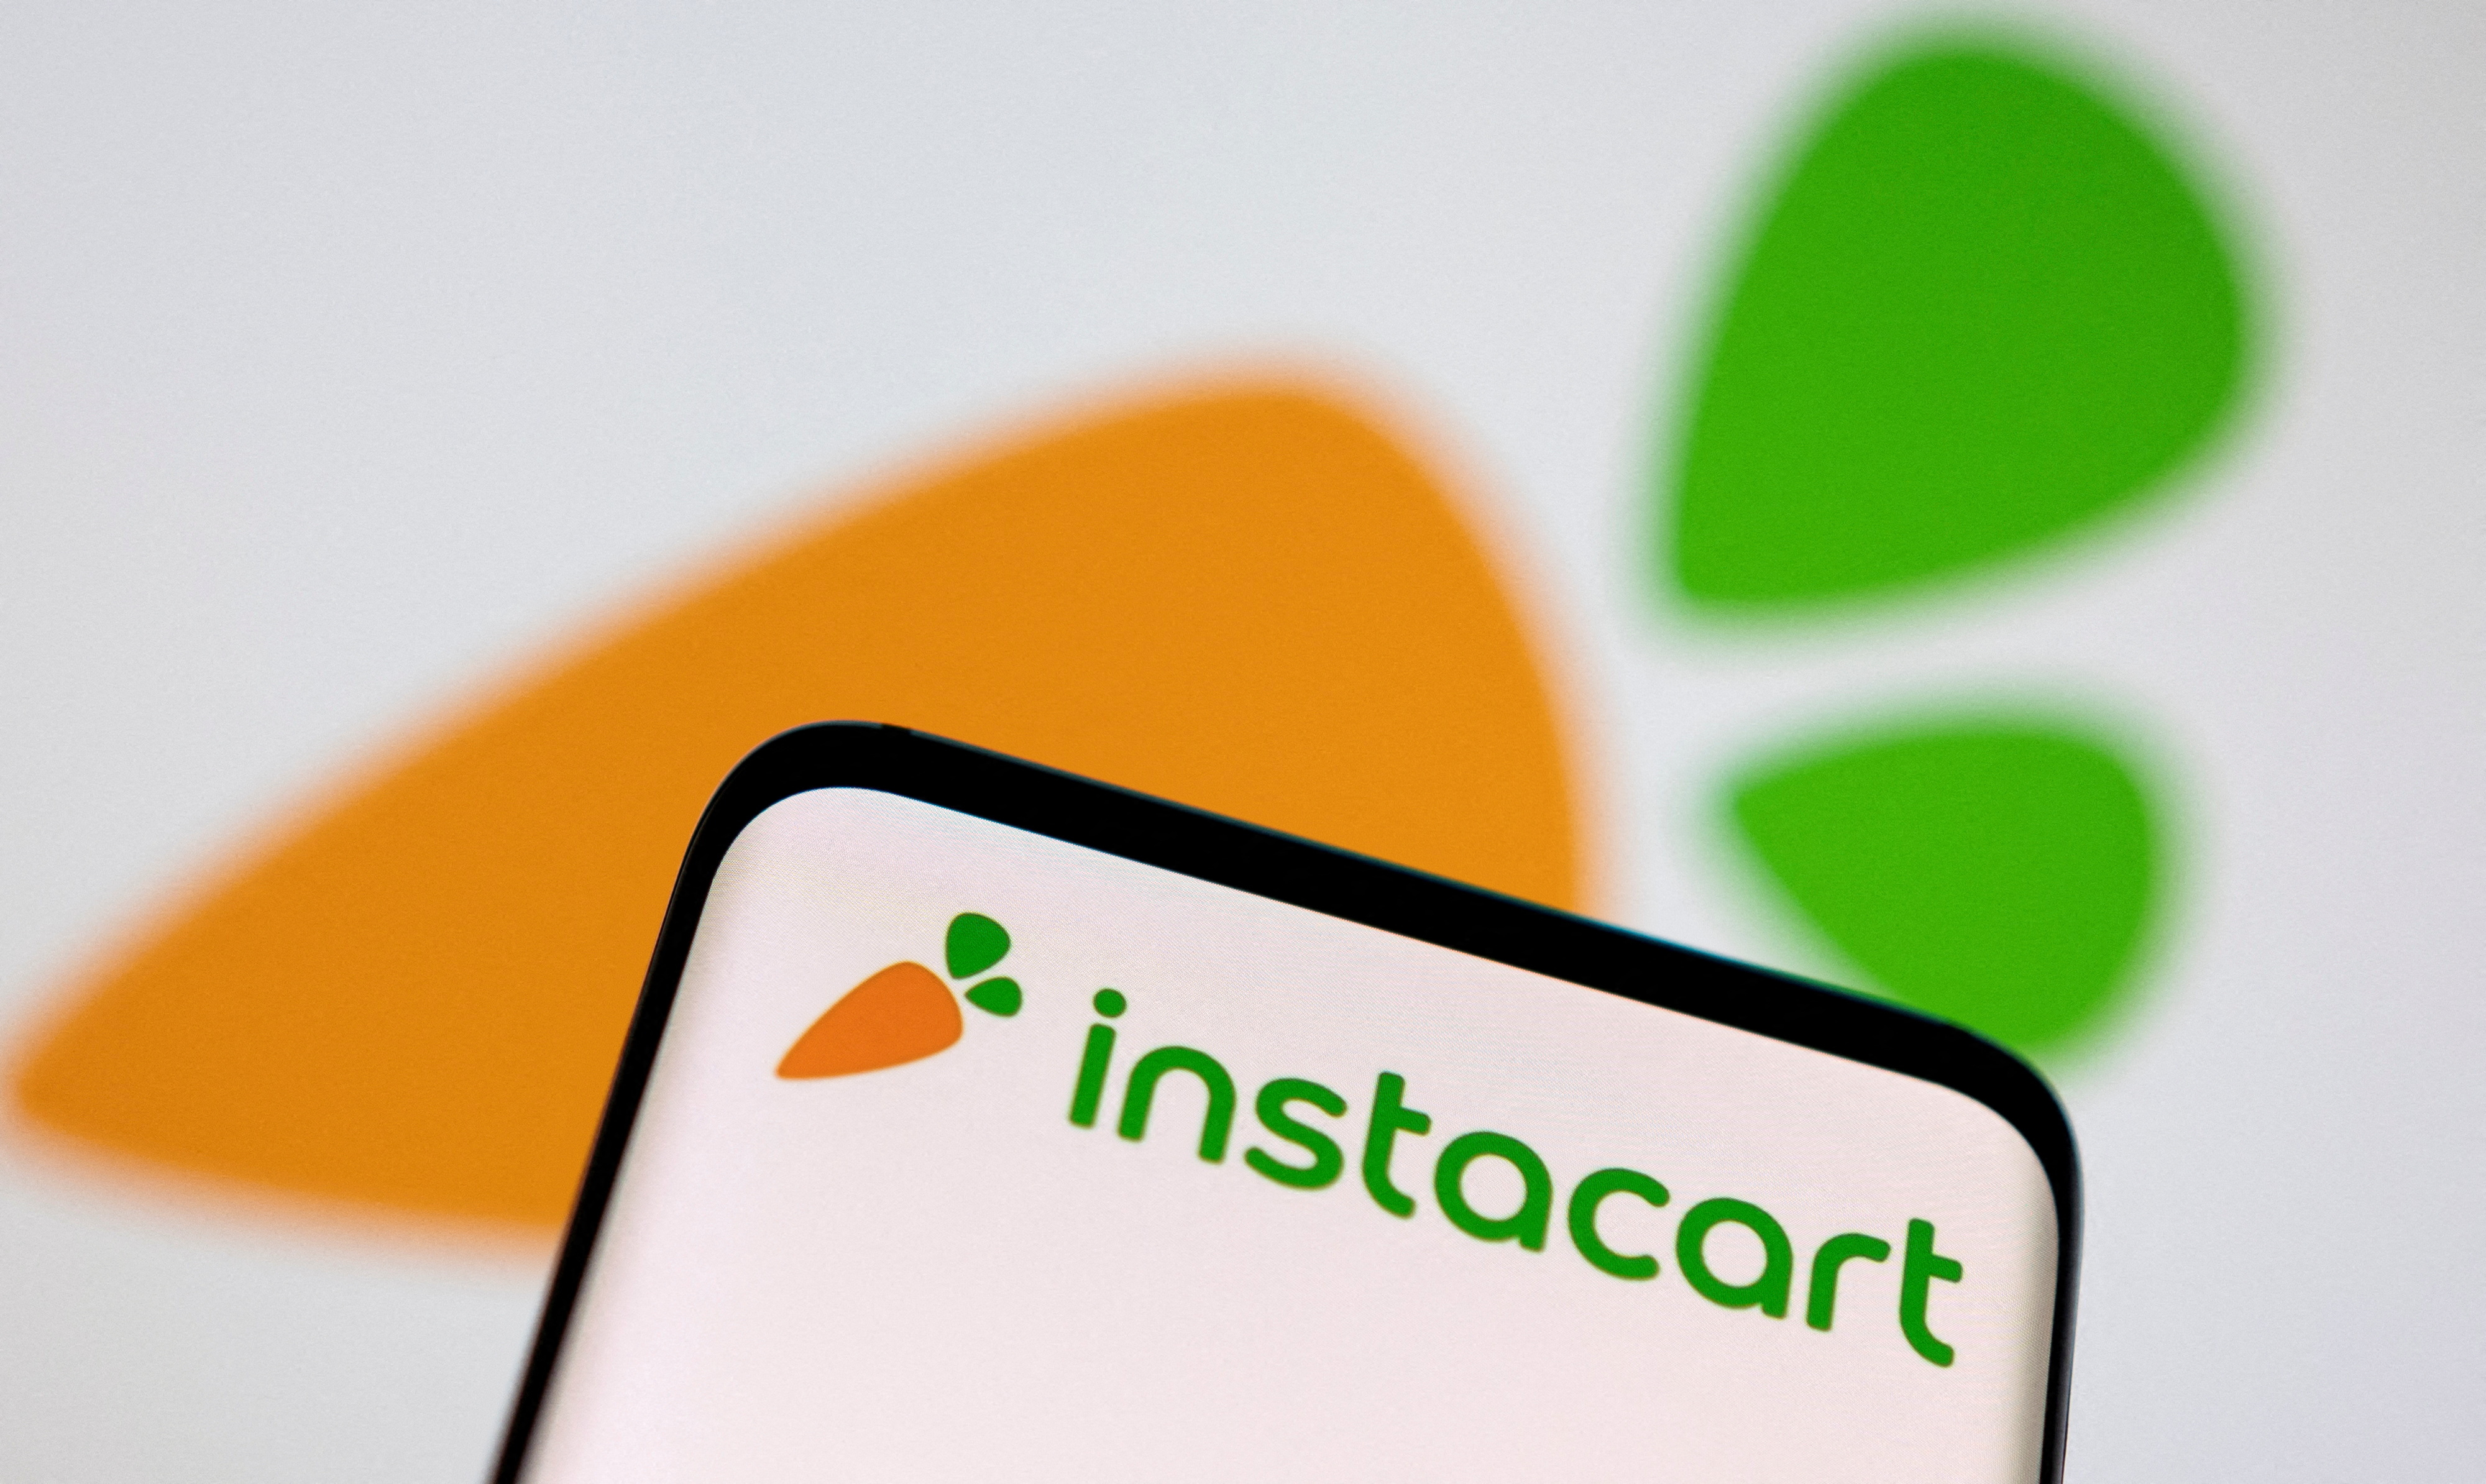 La tienda digital de alimentación Instacart sale a Bolsa valorada en 10.000 millones de dólares